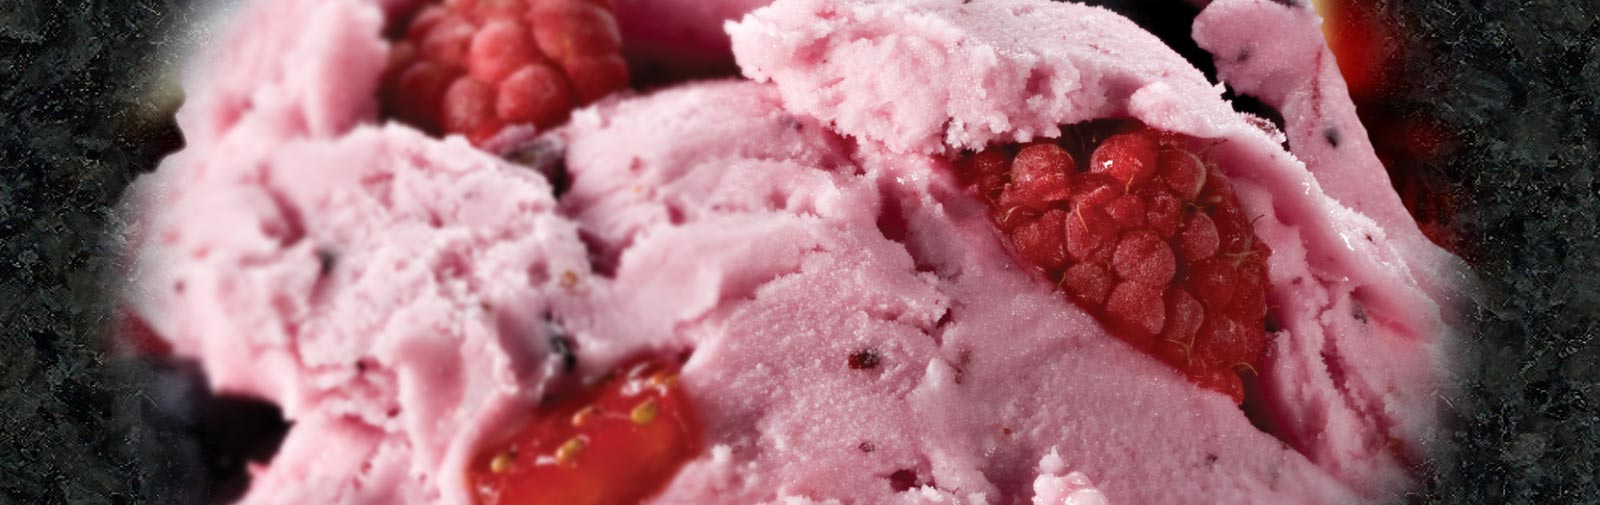 Close-up photo of frozen Raspberry Yogurt with fresh raspberries